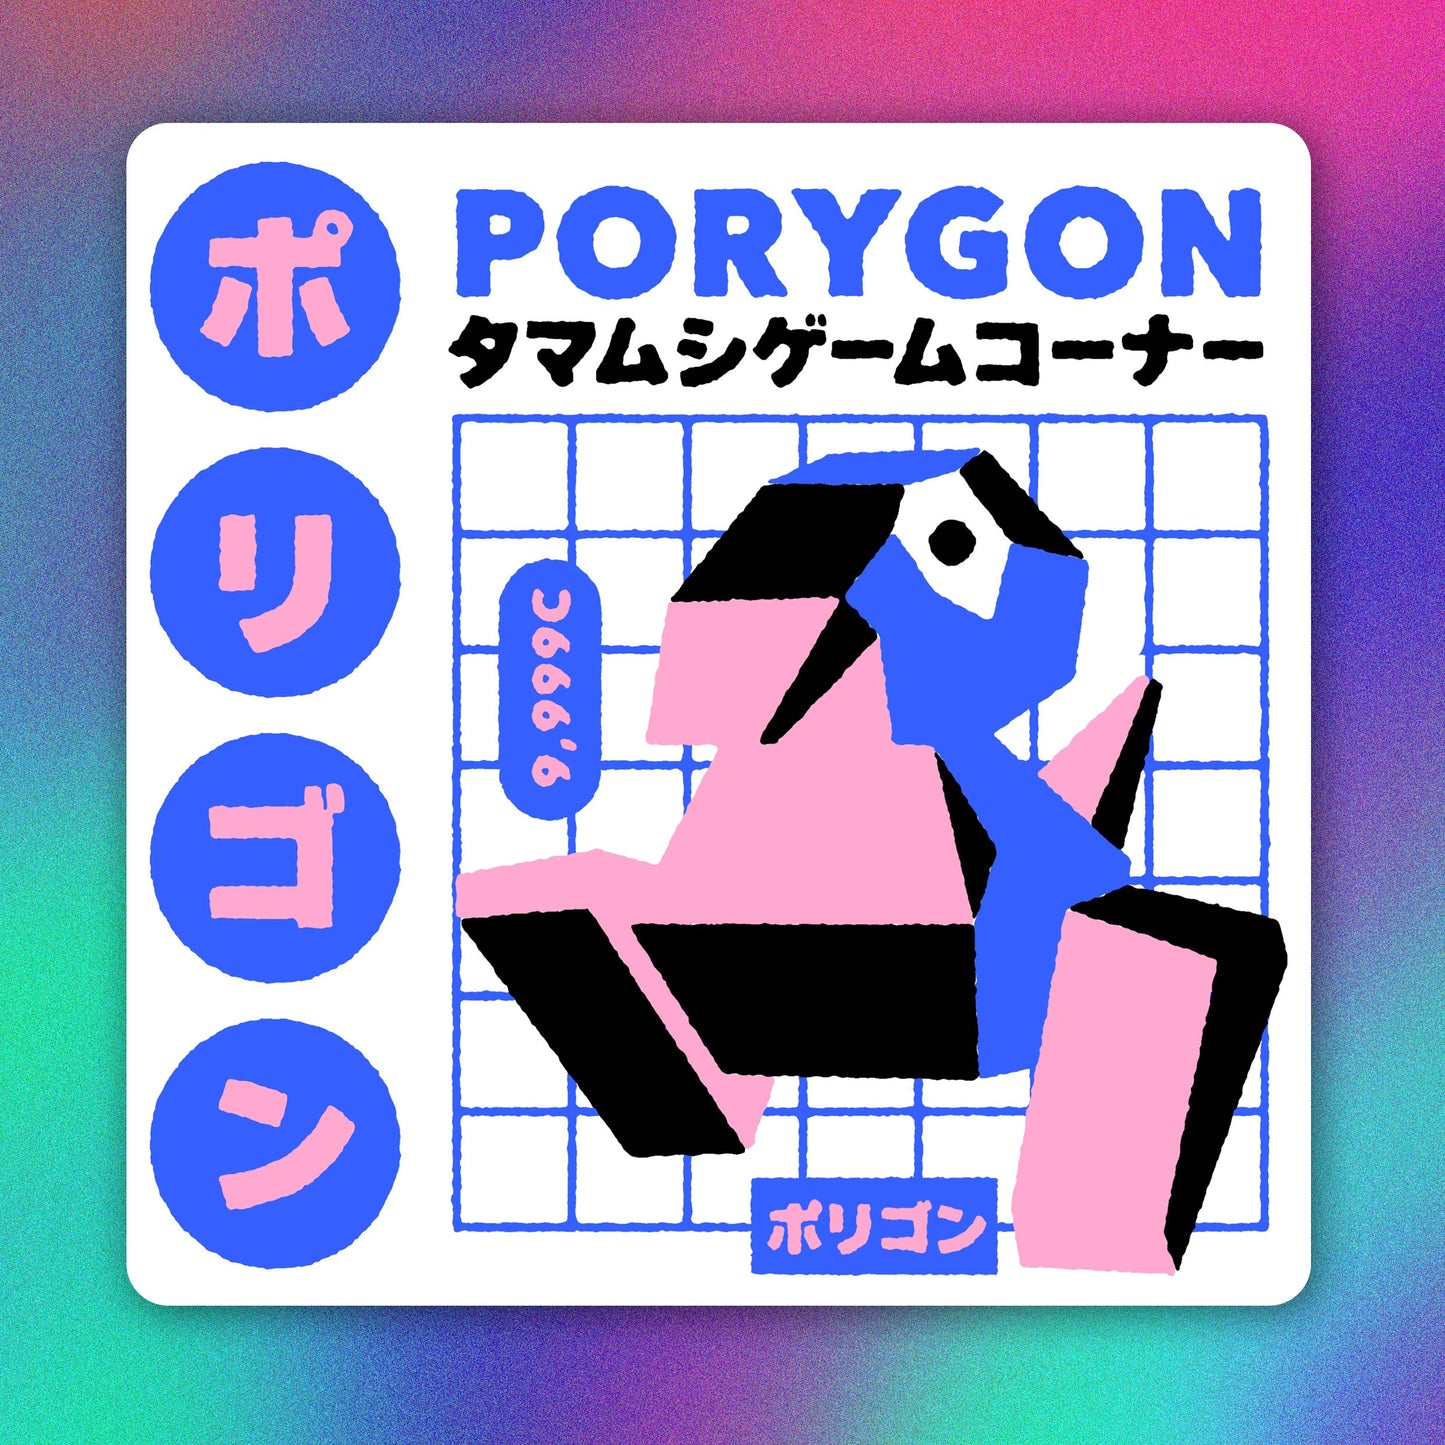 Shiny Porygon Advertisement Vinyl Sticker